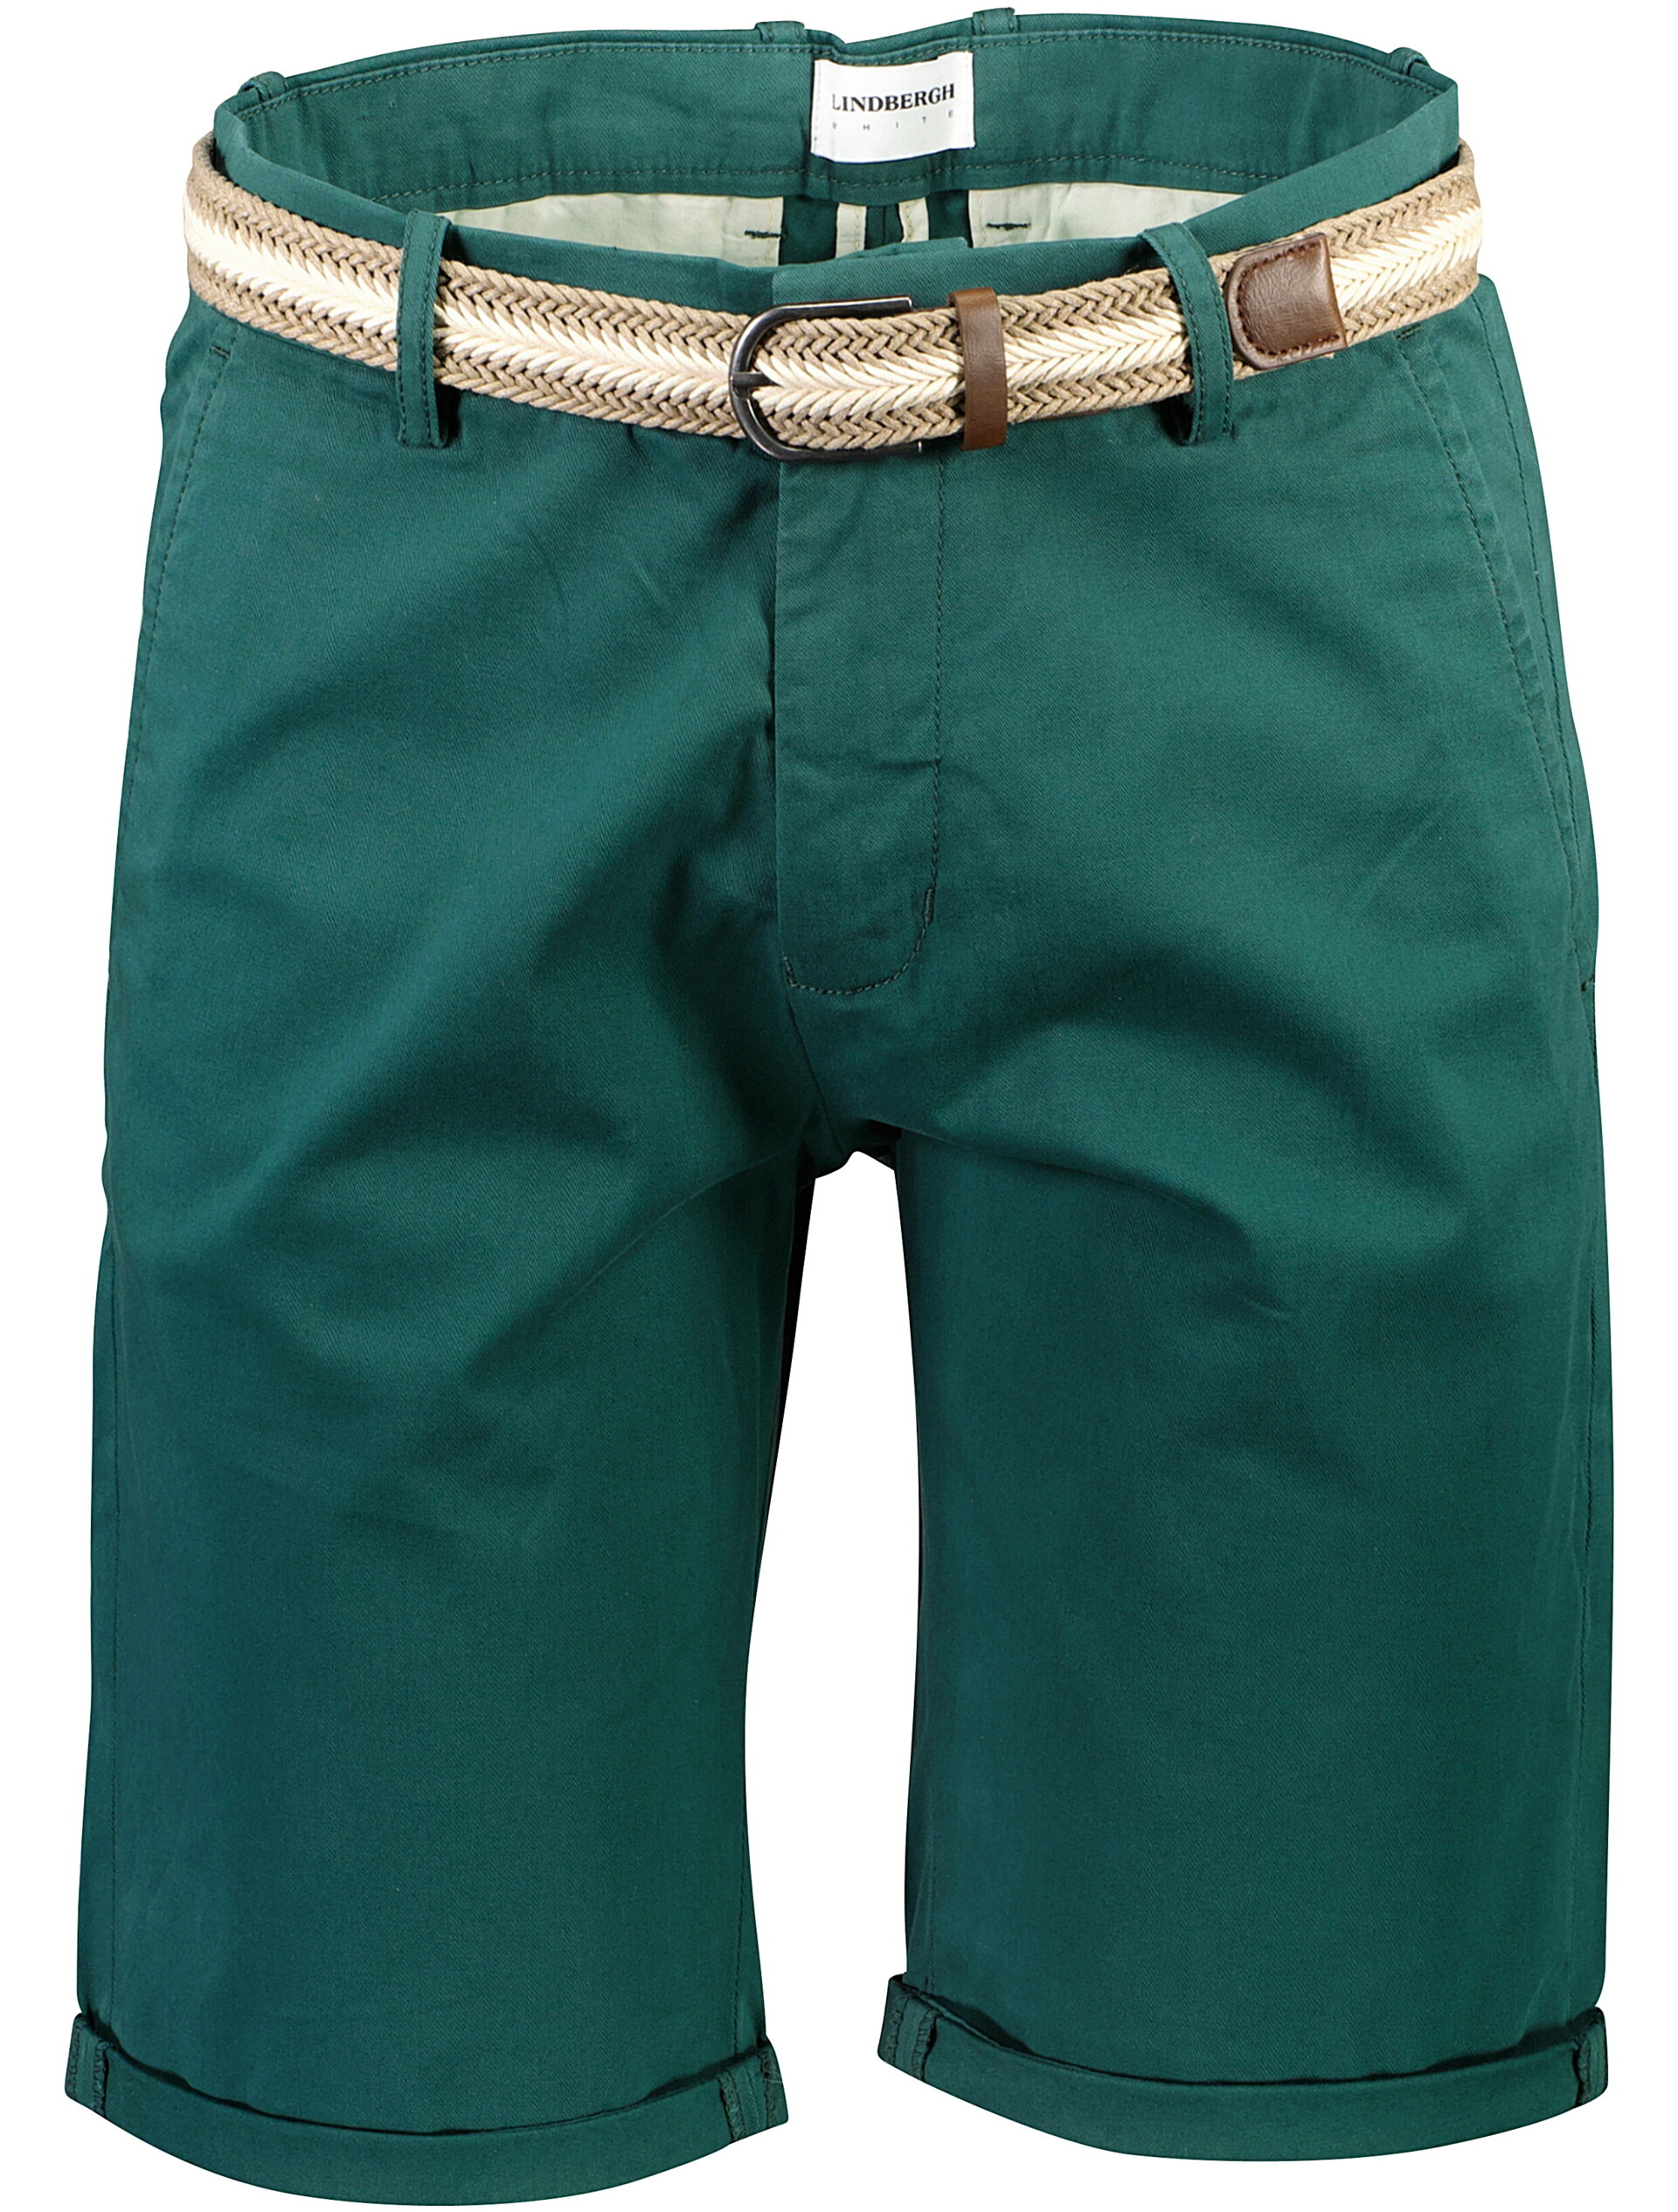 Lindbergh Chino-Shorts grün / deep green